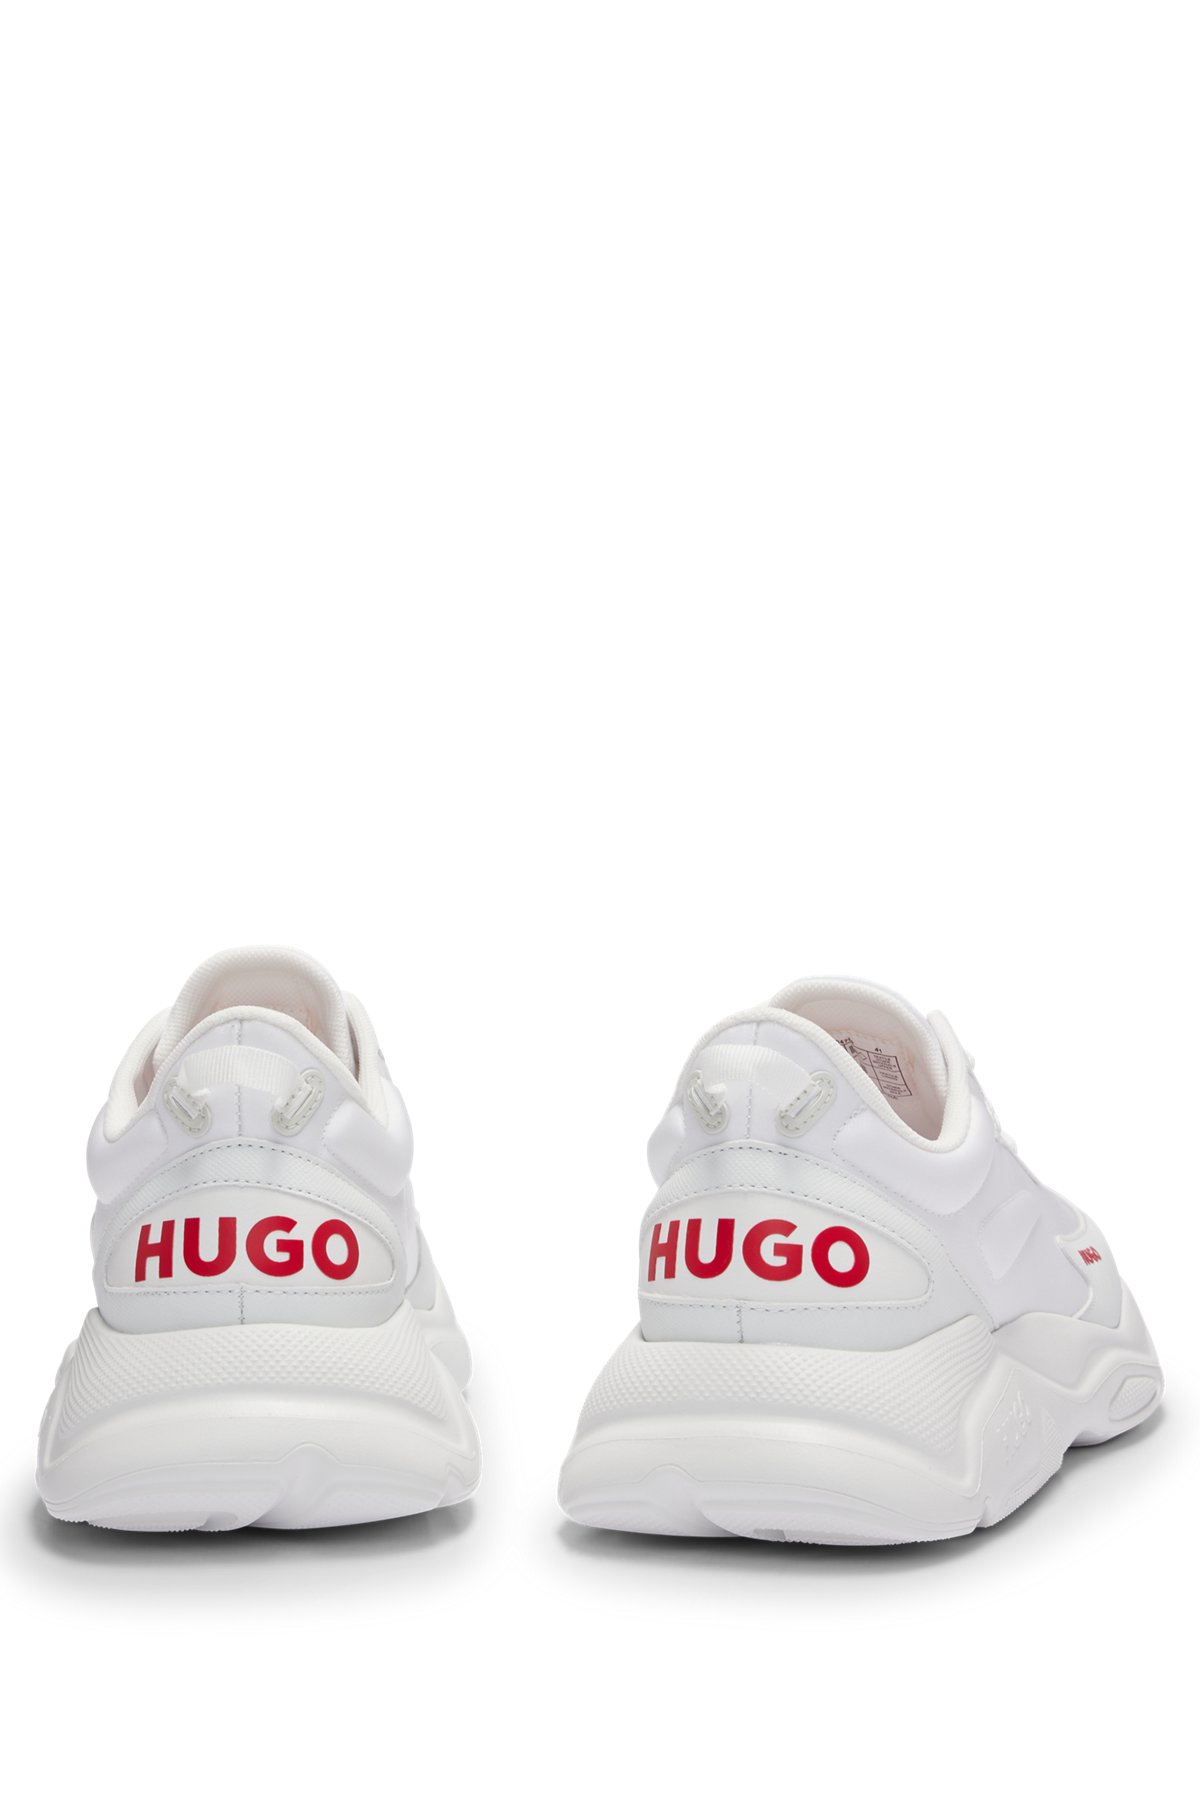 HUGO - ミックスマテリアル レースアップスニーカー フェイクレザー